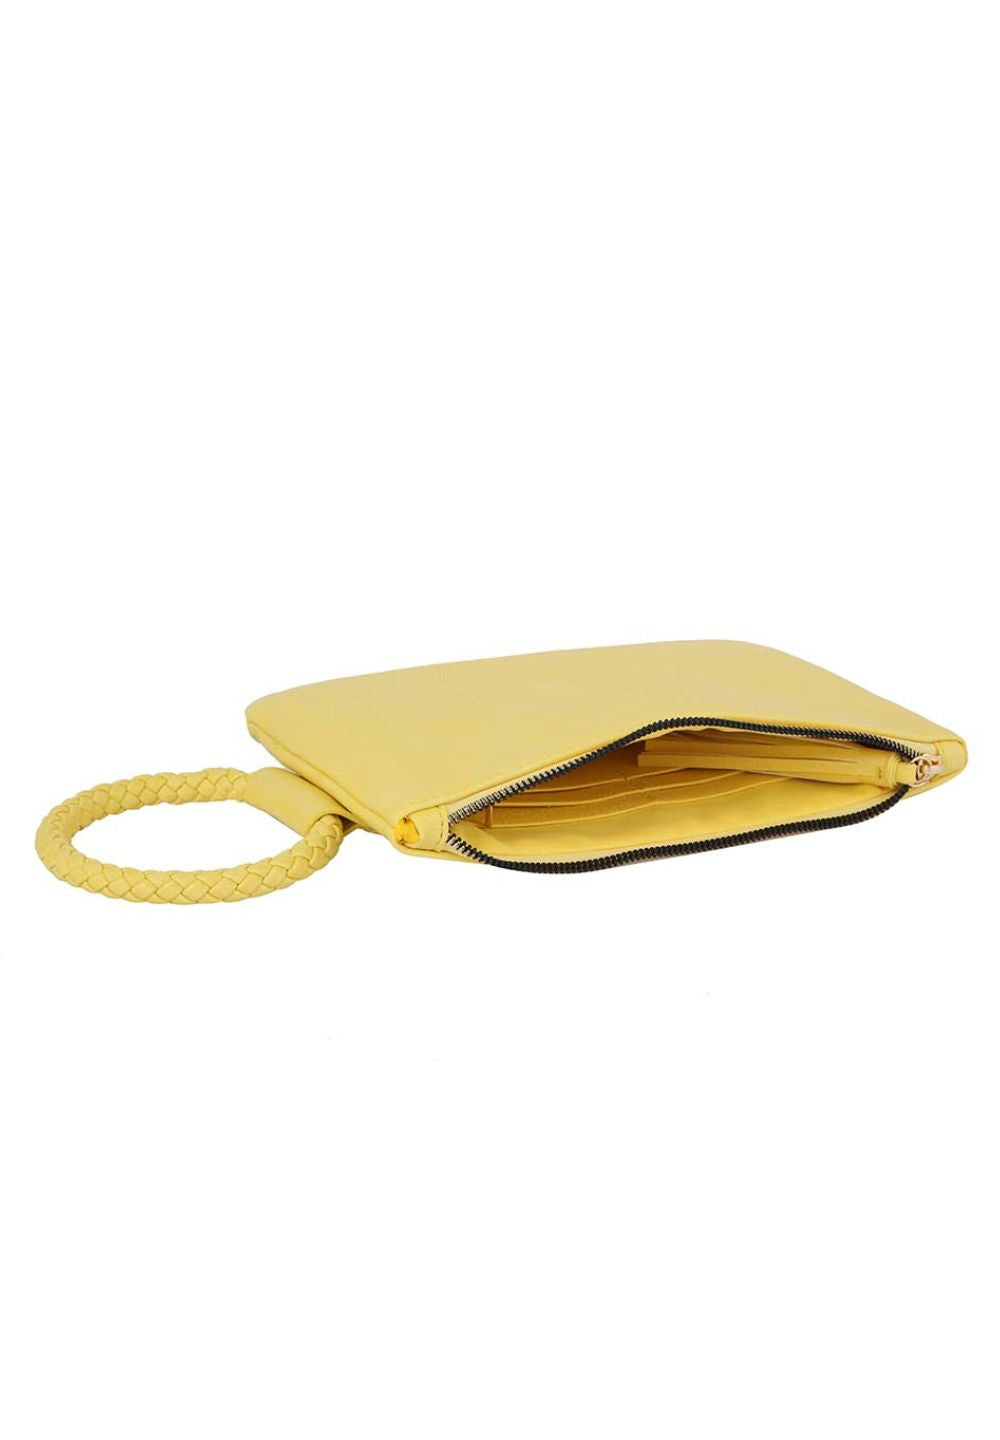 Yellow Fashion Tassel Cuff Handle Clutch Handbag